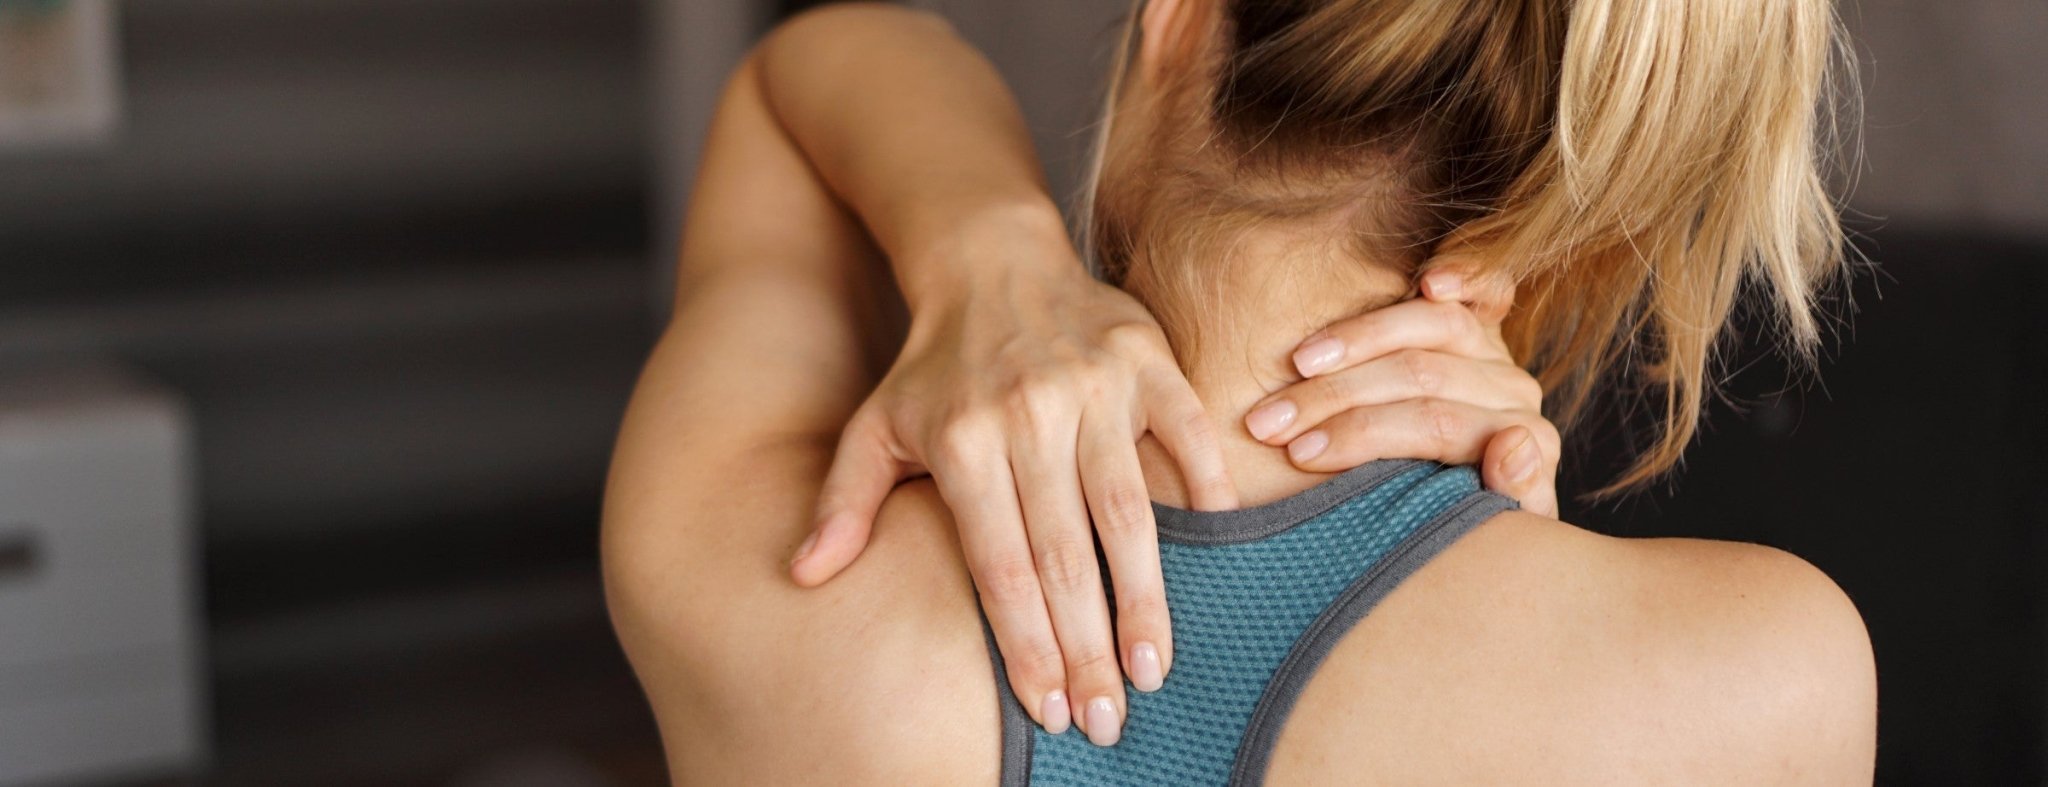 Massagestoelen voor actieve sportbeoefenaars | Massage chair world